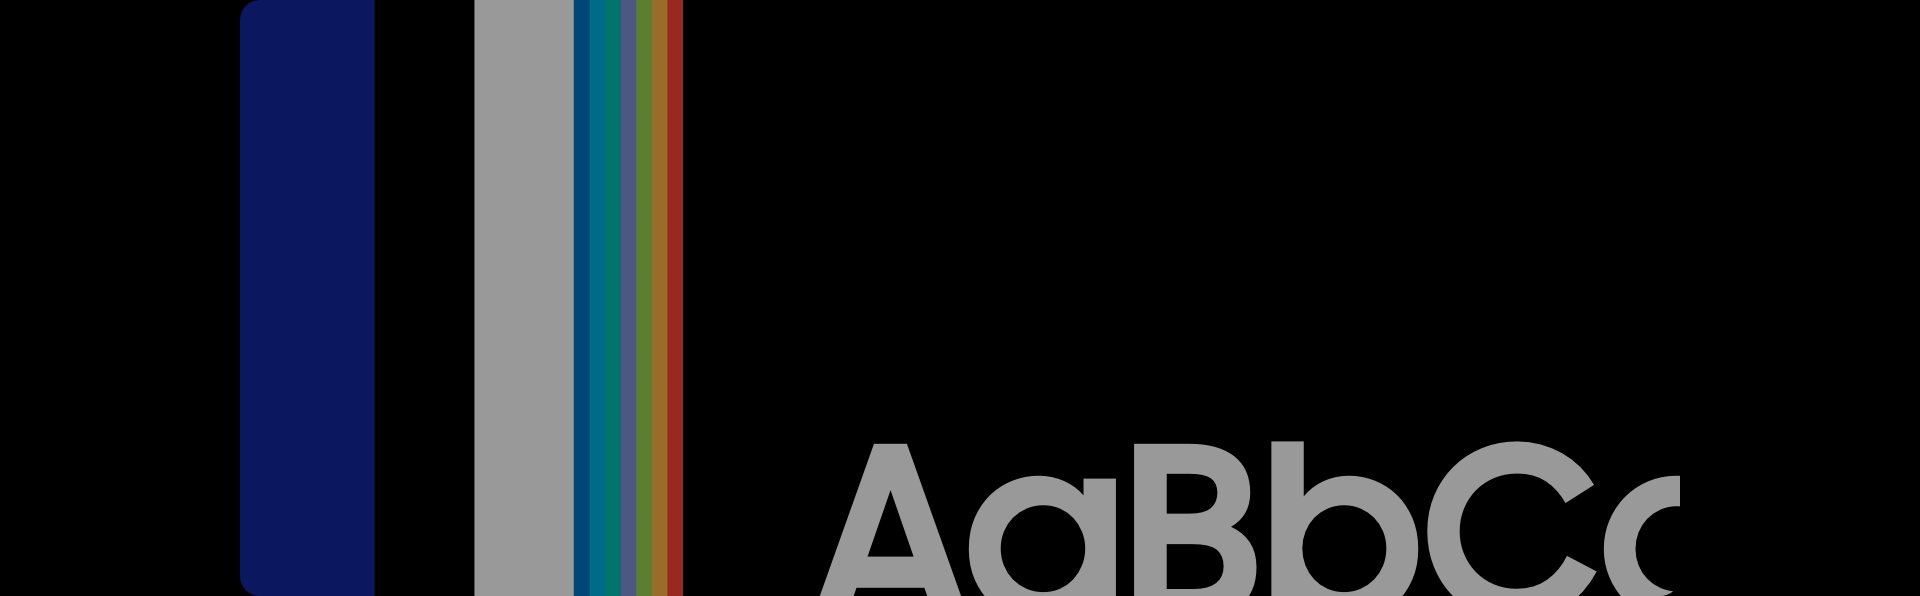 Vom linken Teil des Bildes gehen vertikale Streifen in Samsung Blue, Schwarz und Weiß aus - die Samsung-Farben. Neben den farbigen Streifen steht "AaBbCc" in einem schwarzen Quadrat.